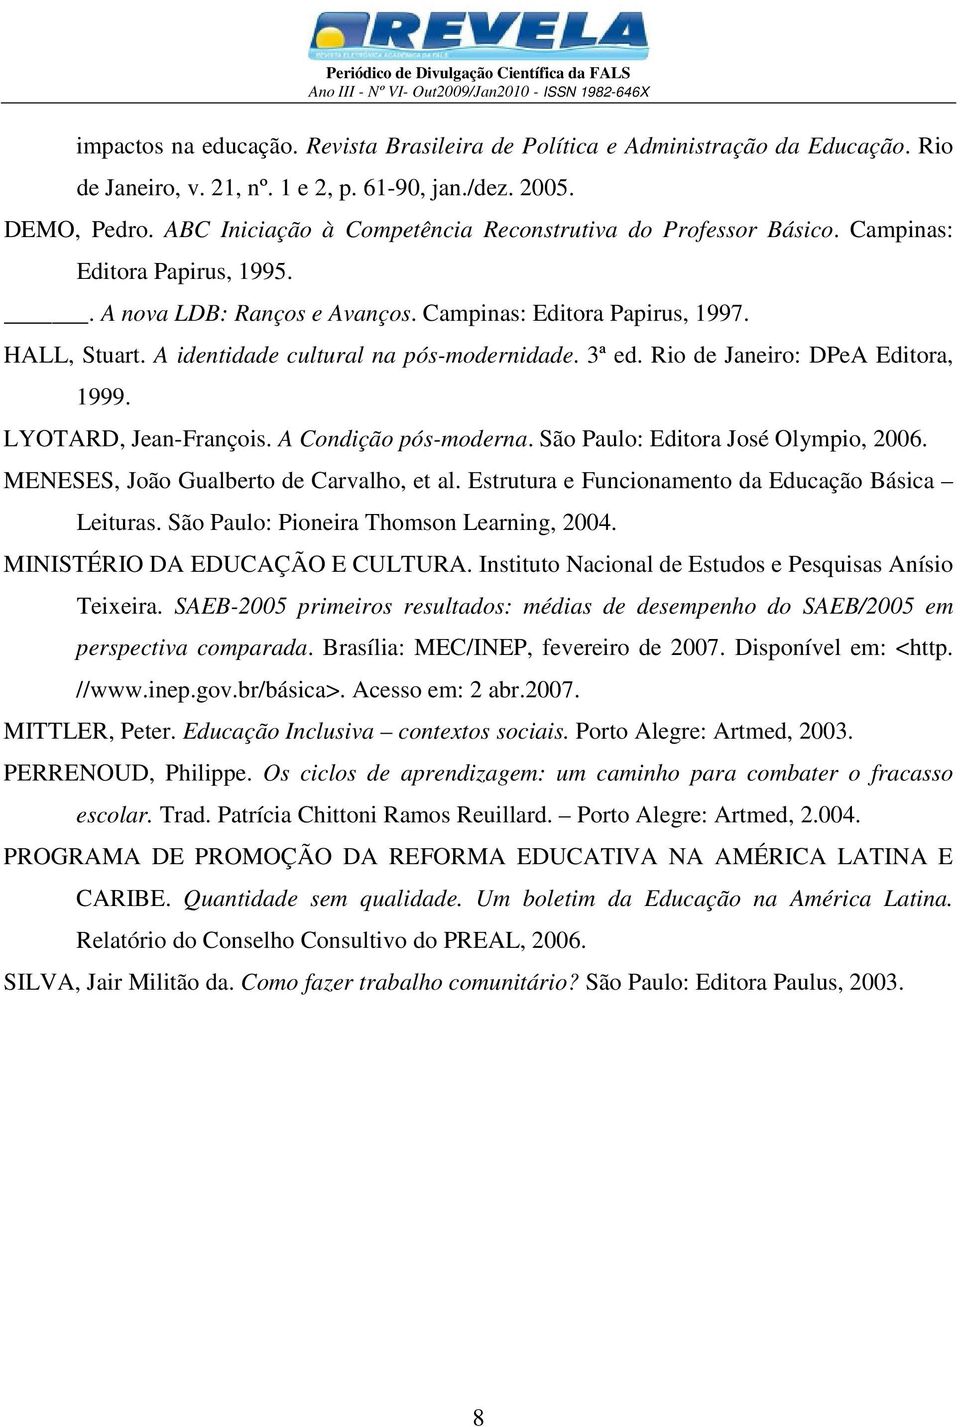 A identidade cultural na pós-modernidade. 3ª ed. Rio de Janeiro: DPeA Editora, 1999. LYOTARD, Jean-François. A Condição pós-moderna. São Paulo: Editora José Olympio, 2006.